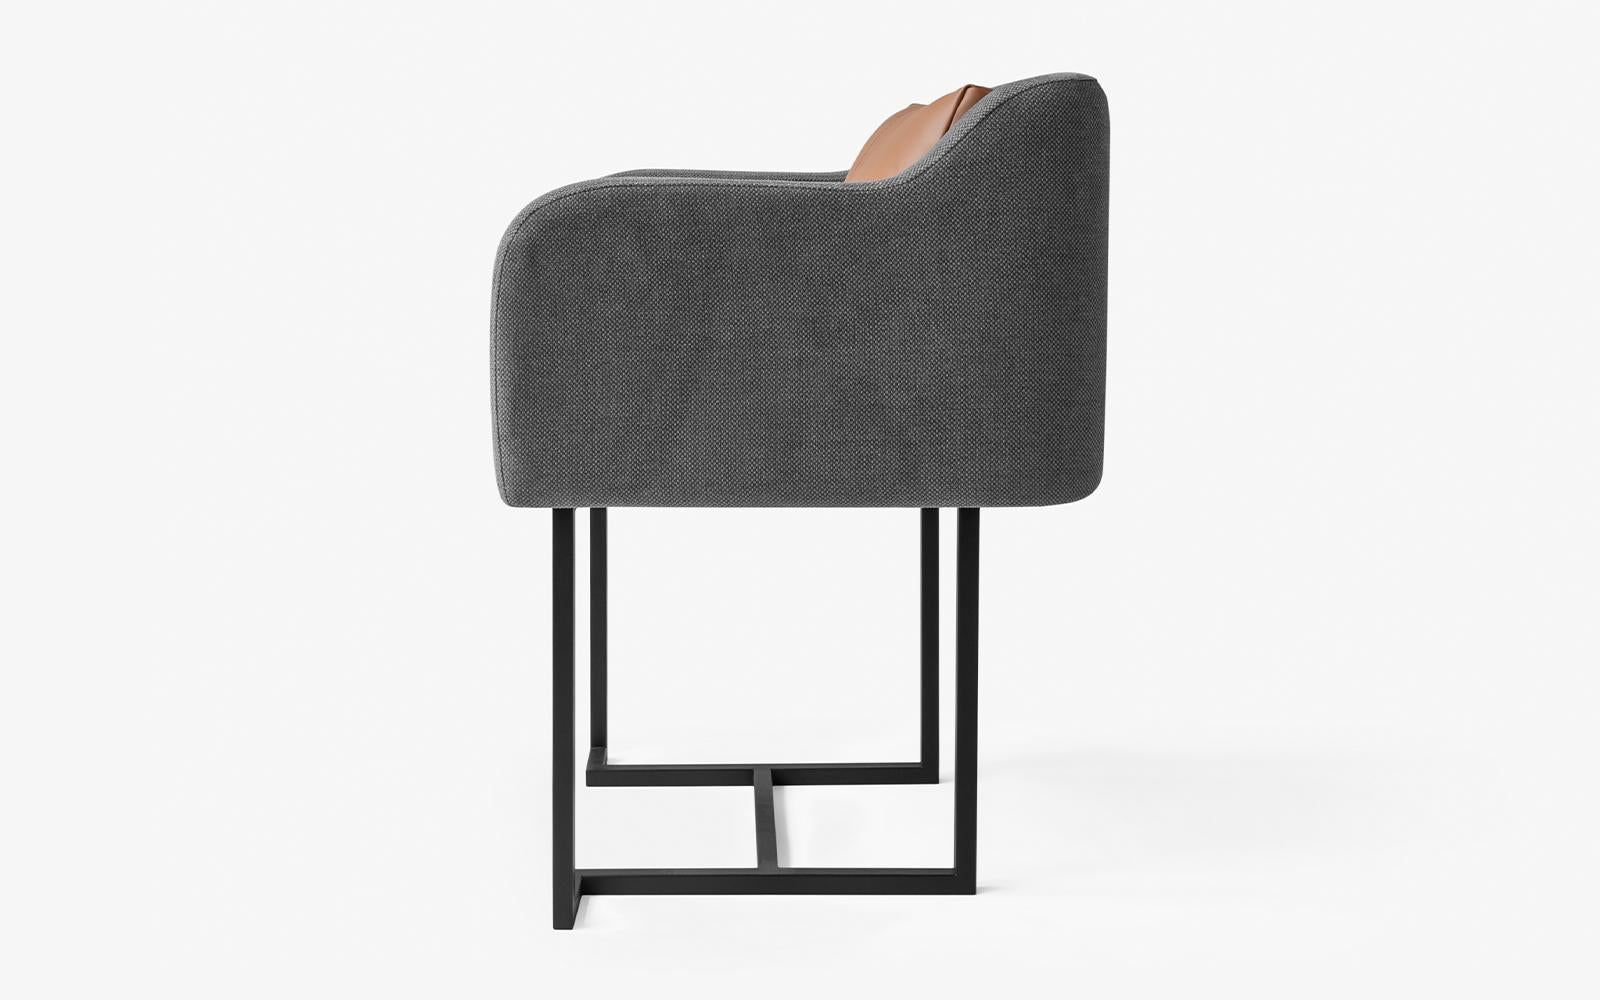 La chaise Papillonne en métal noir s'invite dans votre salon grâce à ses détails, alliant confort et élégance.

Mesures : Longueur : 23.6'' / profondeur : 19.6'' / hauteur : 29.5'' / hauteur du siège : 19.6''
Poids : 12,4 kg
Matériaux : métal